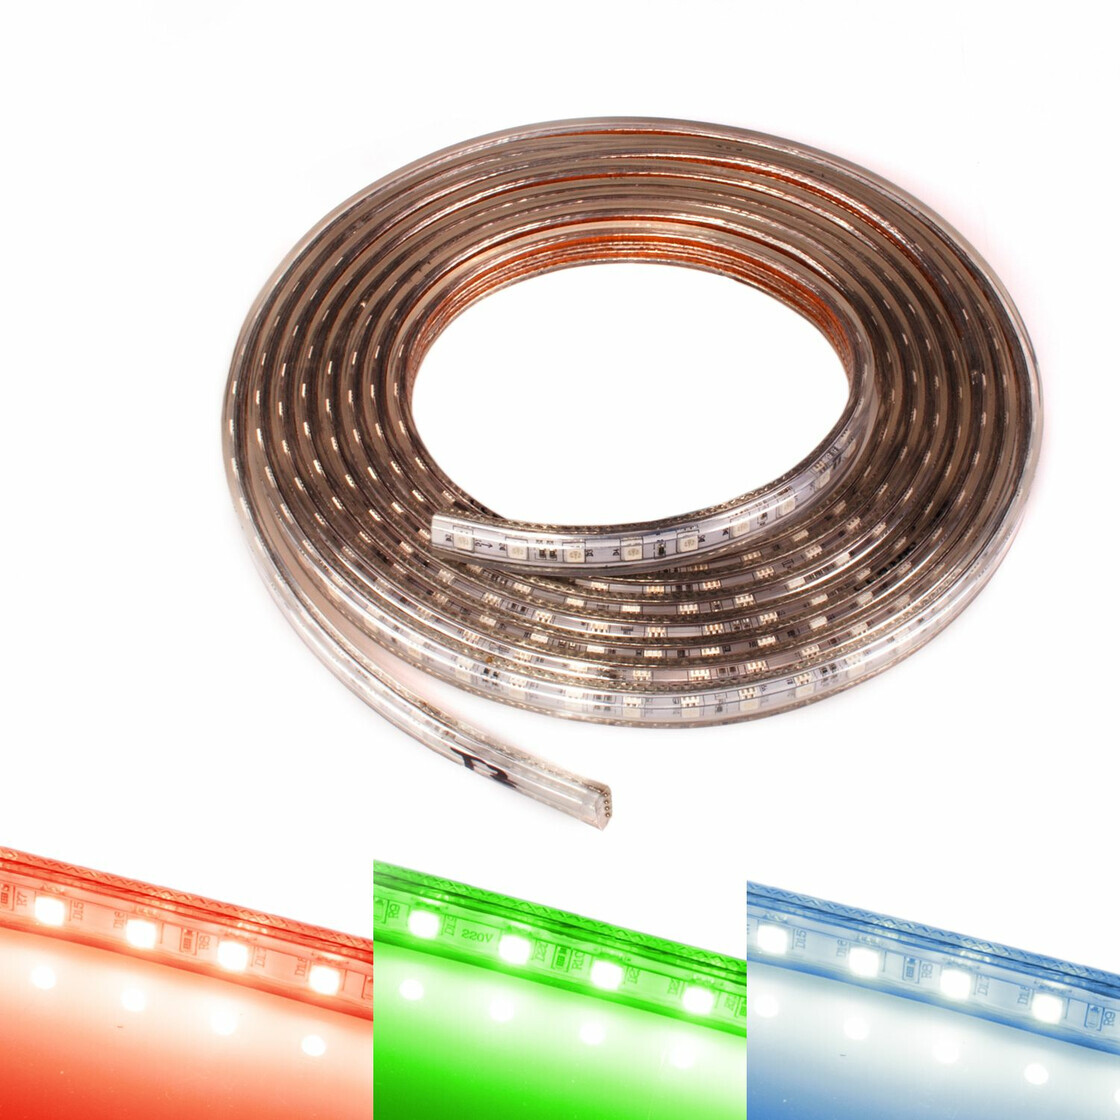 https://www.led-bestellen.de/media/image/product/8796/lg/230v-led-streifen-rgb-band-streifen-leiste-ip44-stripe-dimmbar-lichtleiste-lichtschlauch-lichtkette.jpg